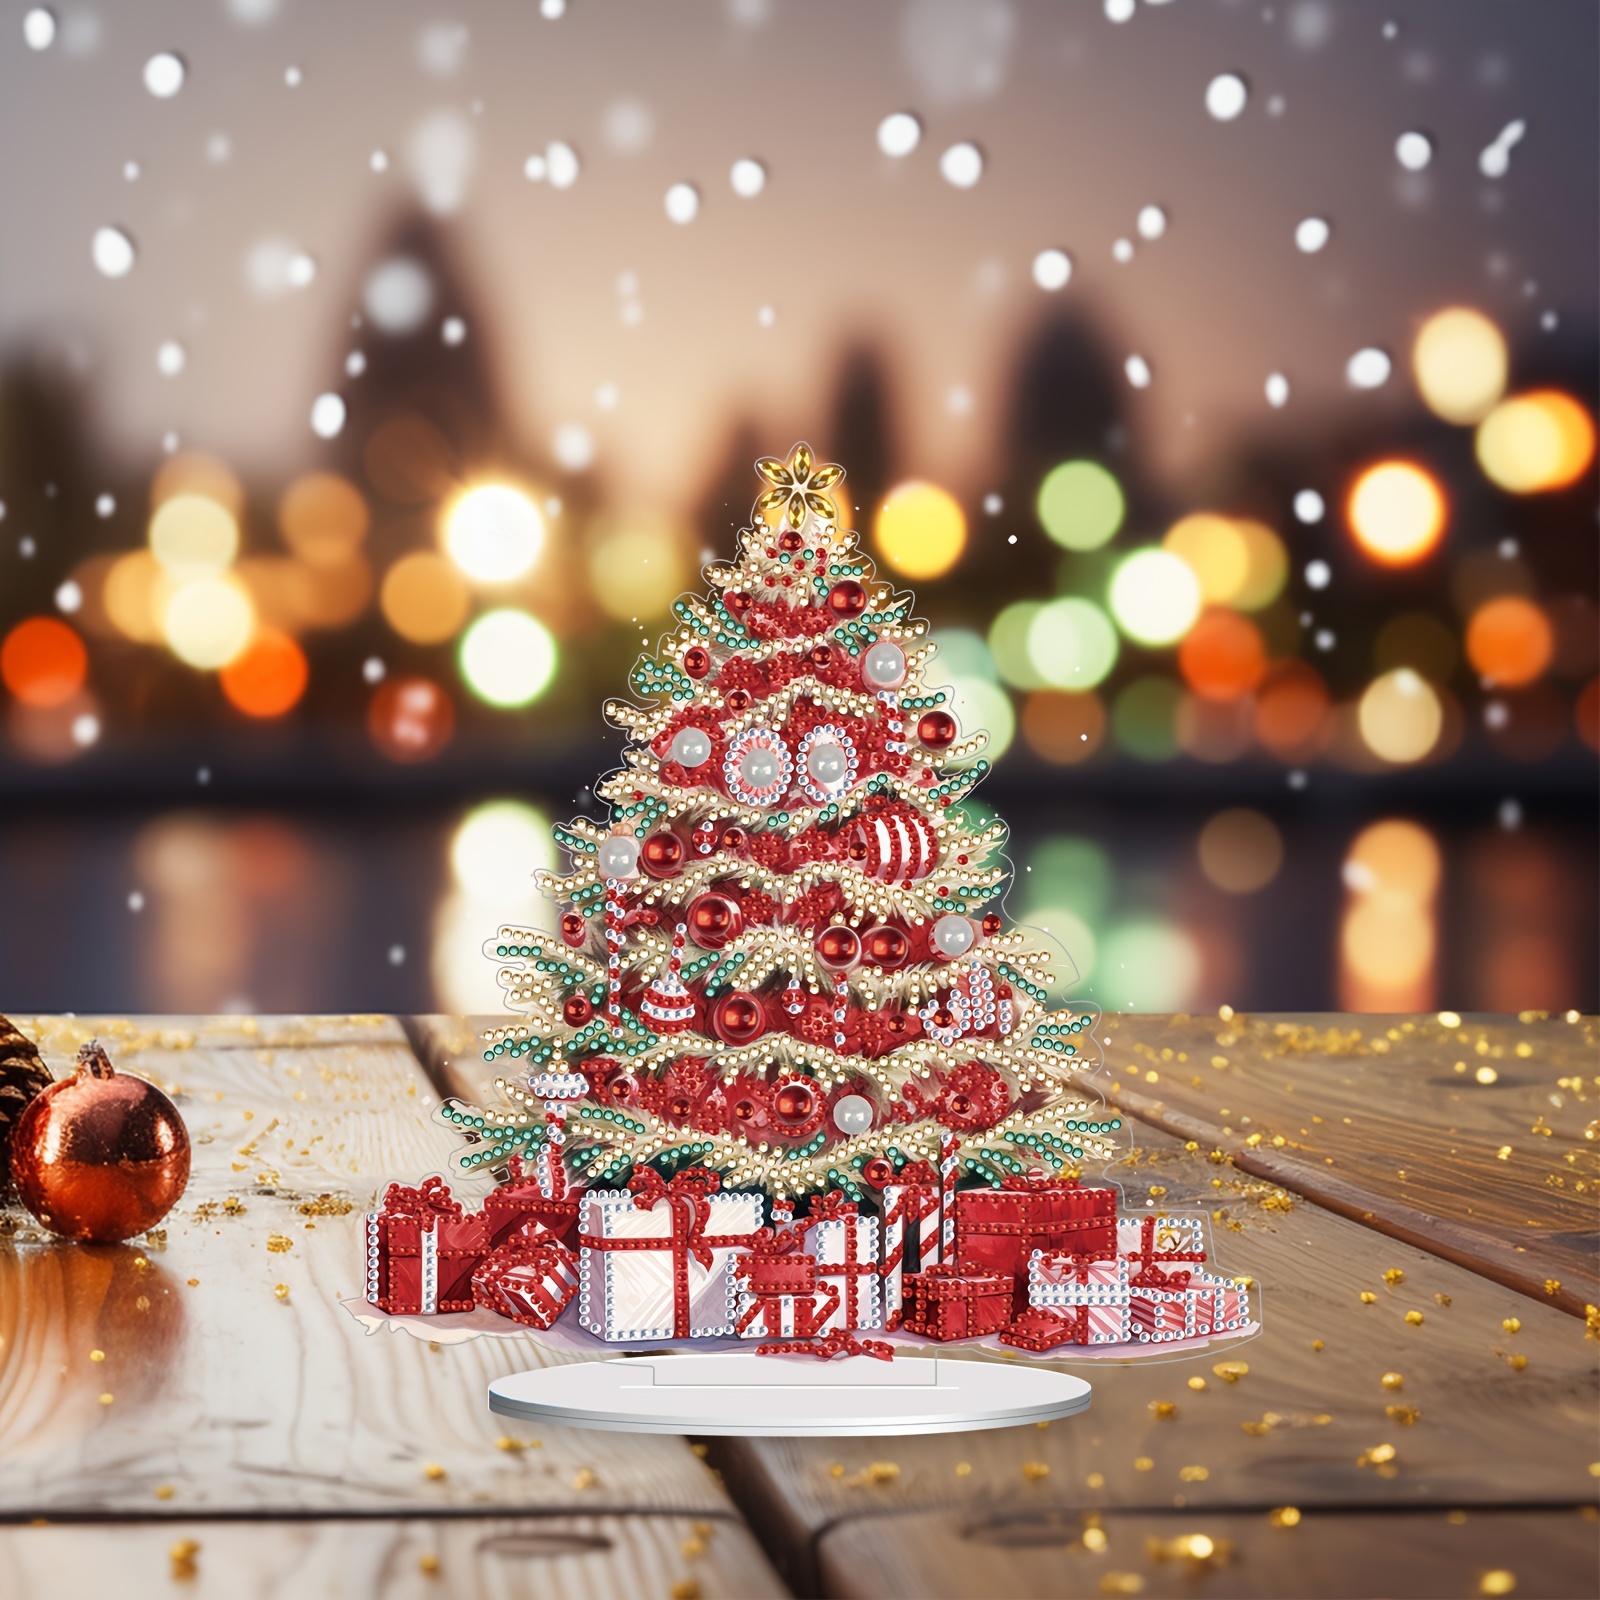 Diamond Art - Christmas Tree